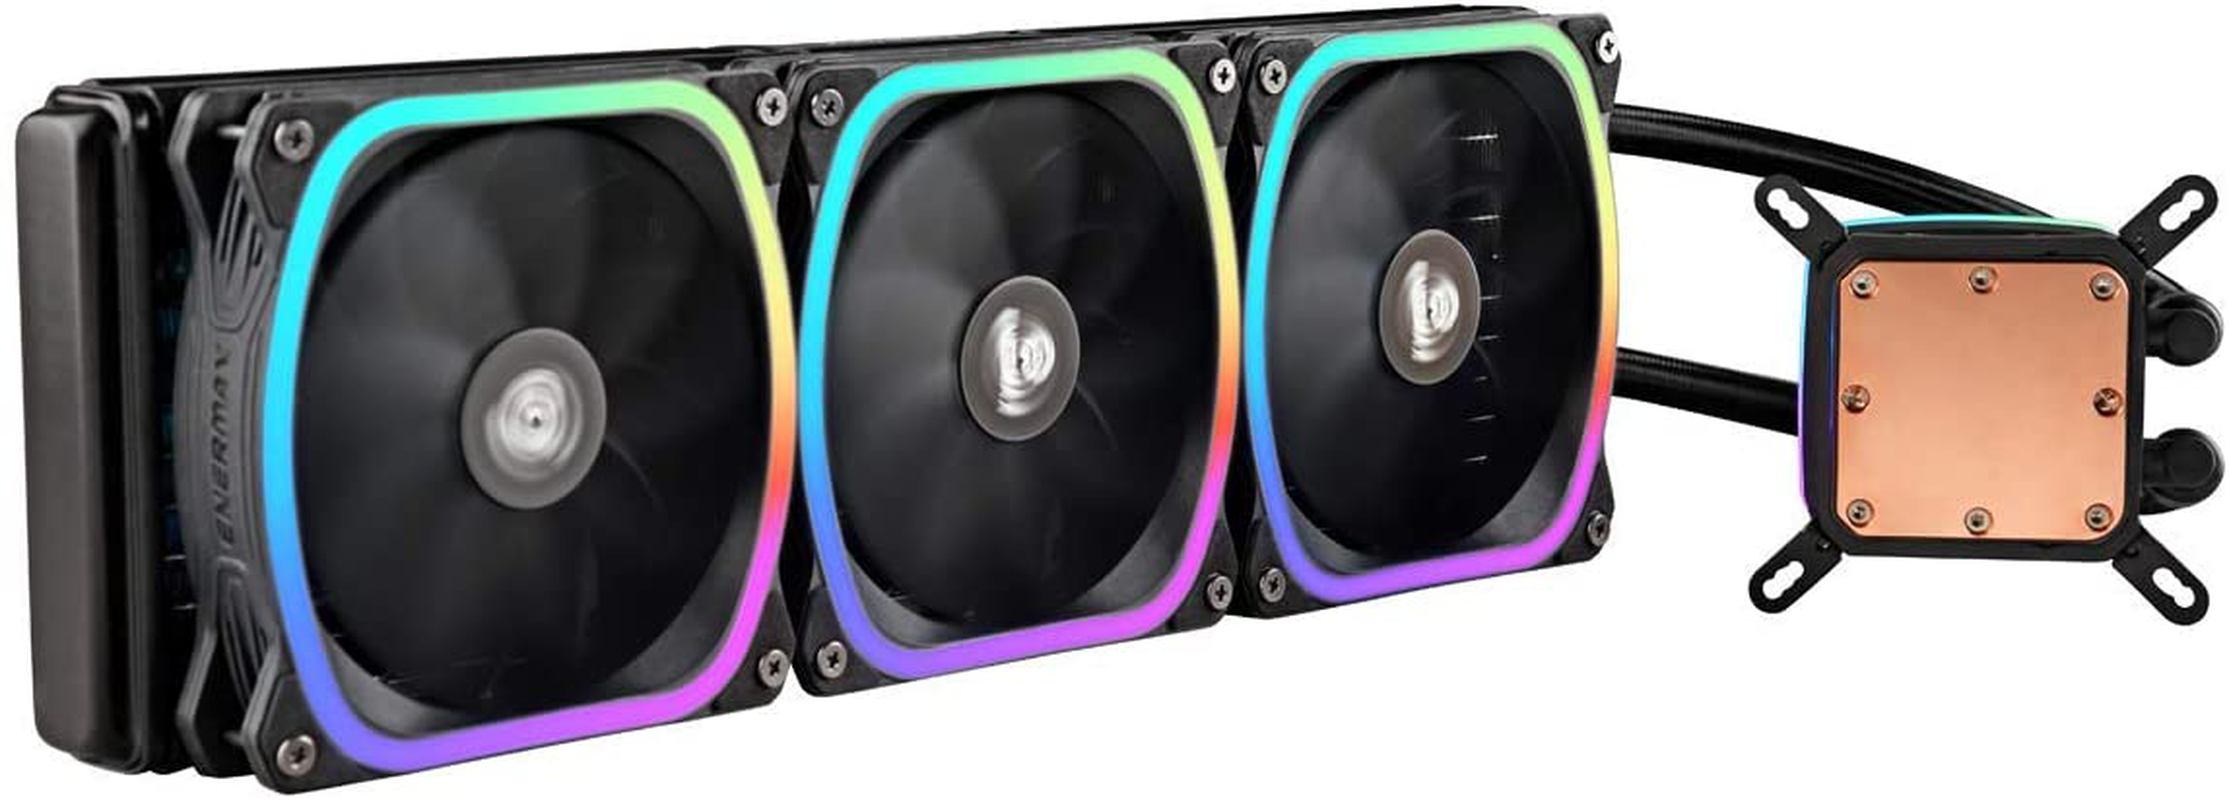 Enermax Aquafusion 360 Addressable RGB AIO CPU Liquid Cooler - 360Mm Radiator, Triple 120Mm ARGB PWM Fan - Support Intel & AMD Ryzen - 5 Year Warranty